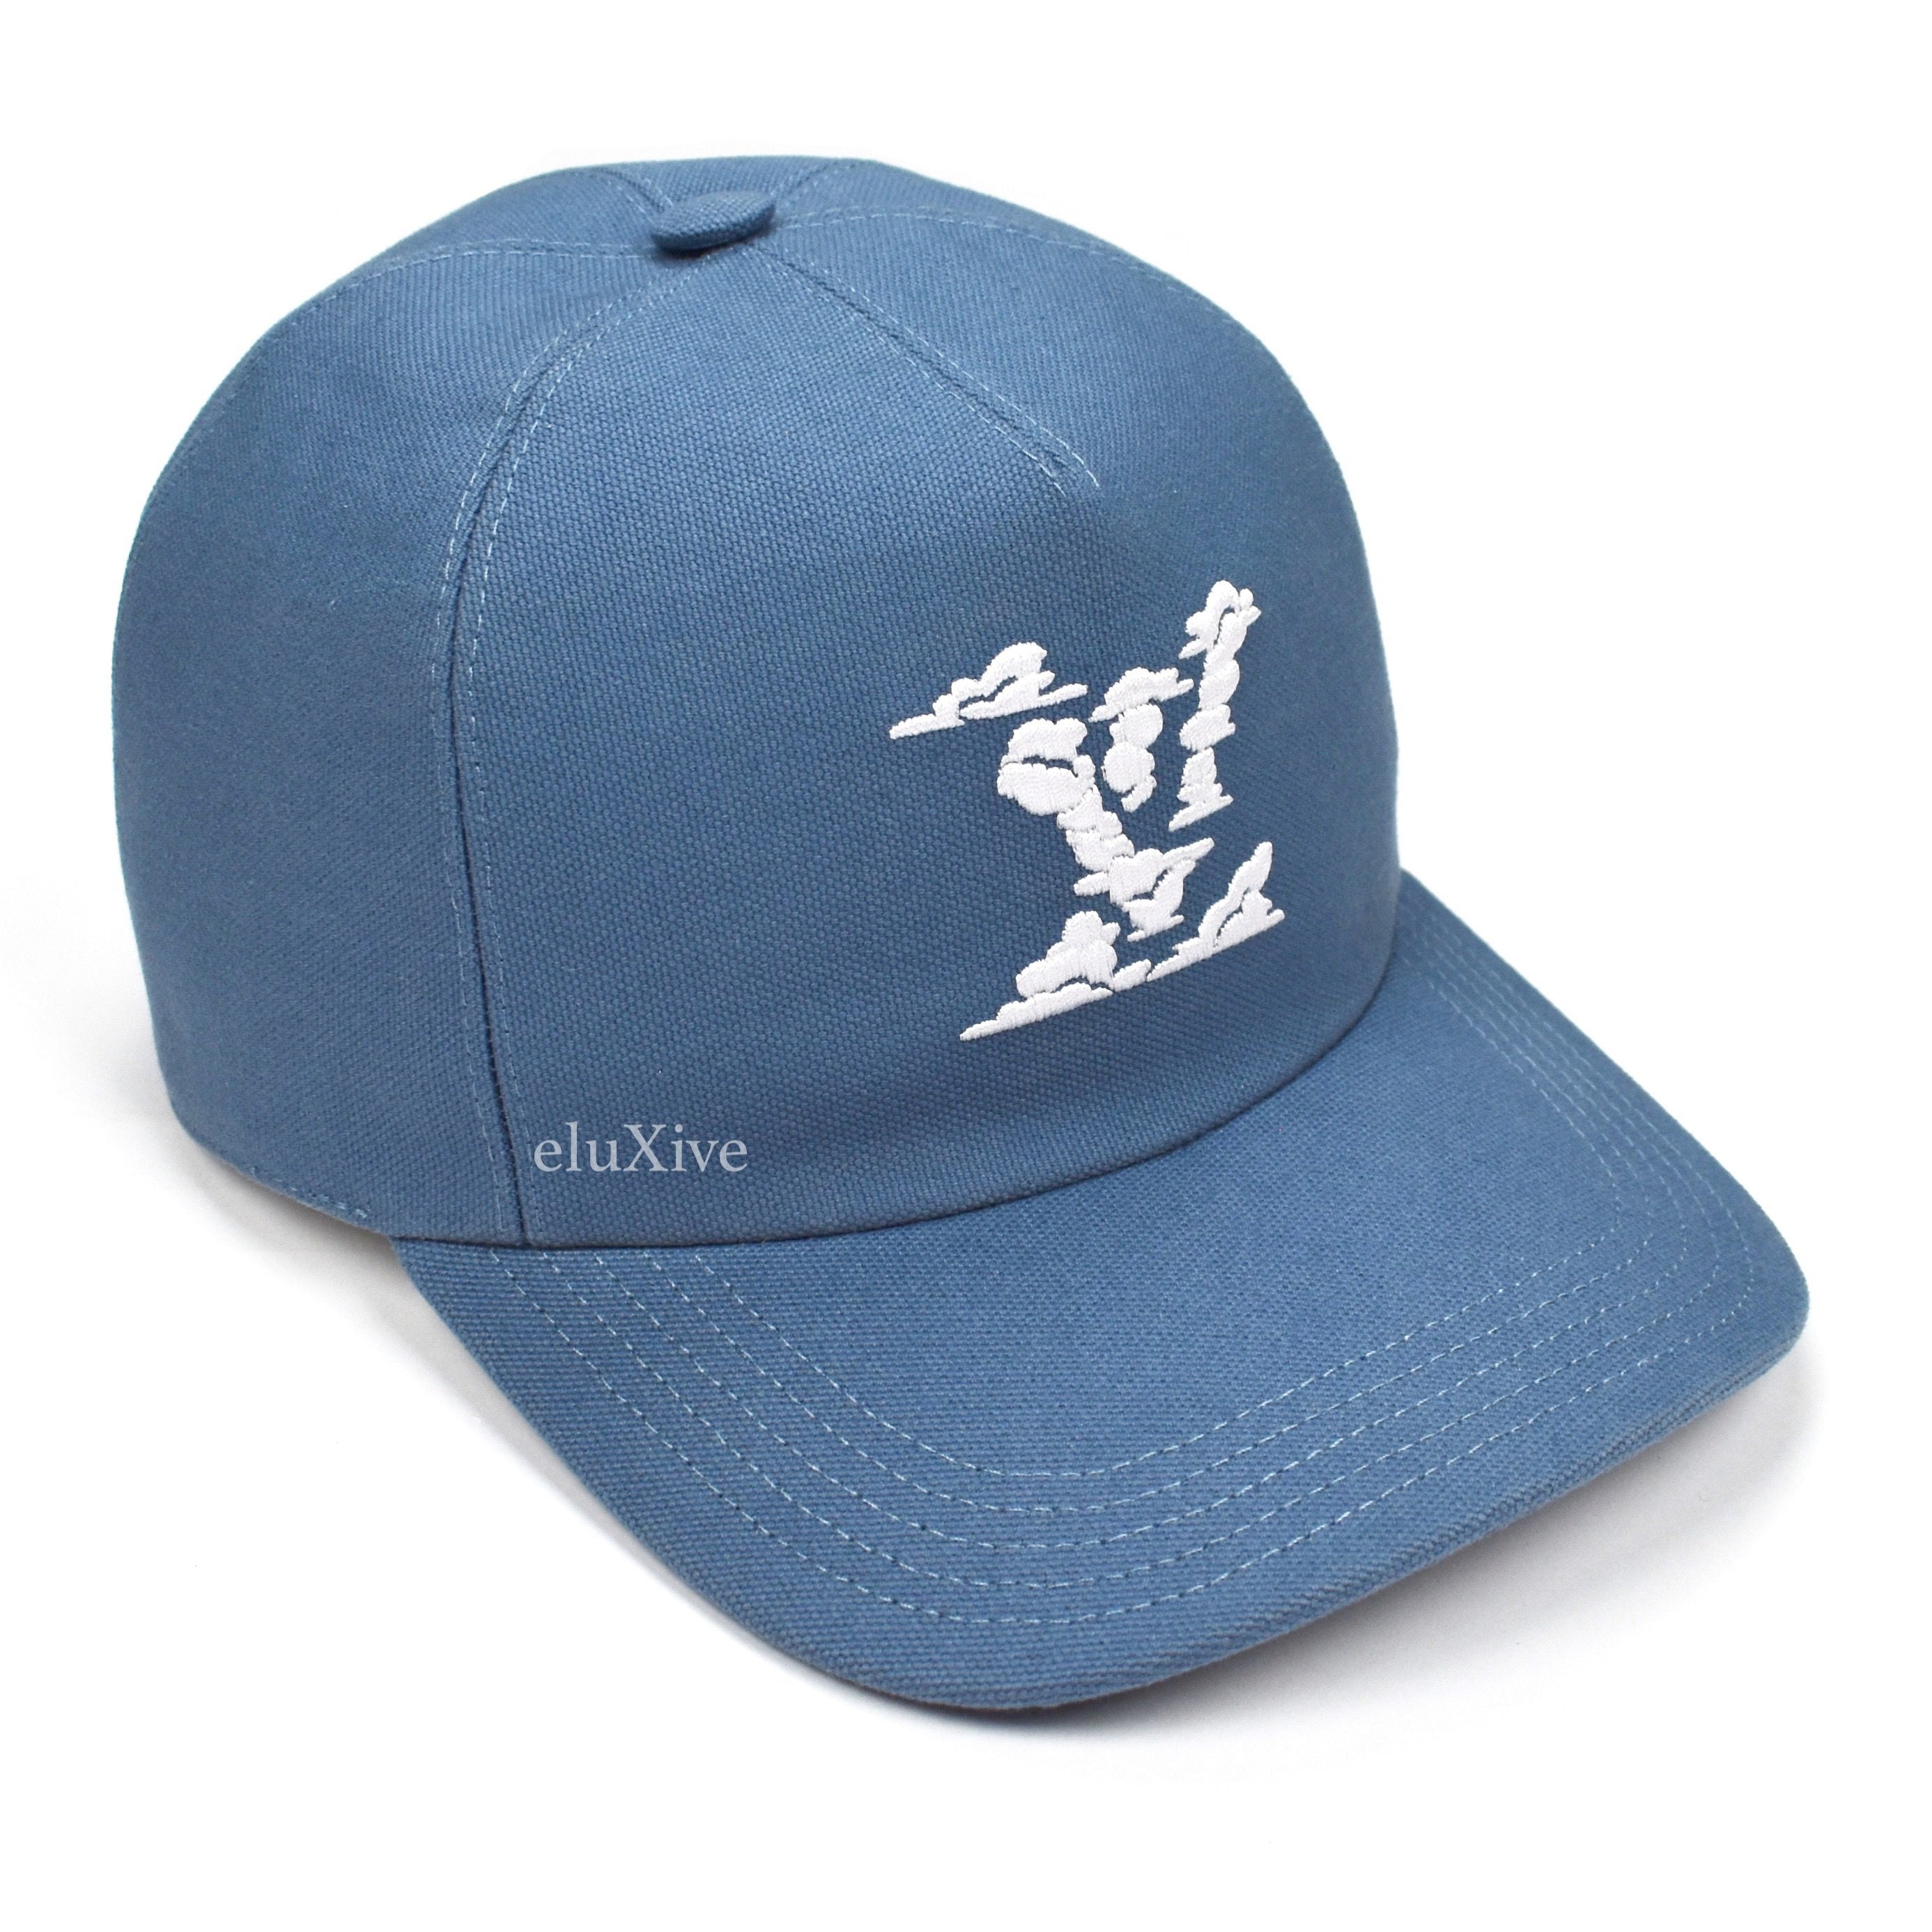 LOUIS VUITTON LV Clouds Cap Baseball Hat Size 60 860470 $1,840.00 - PicClick